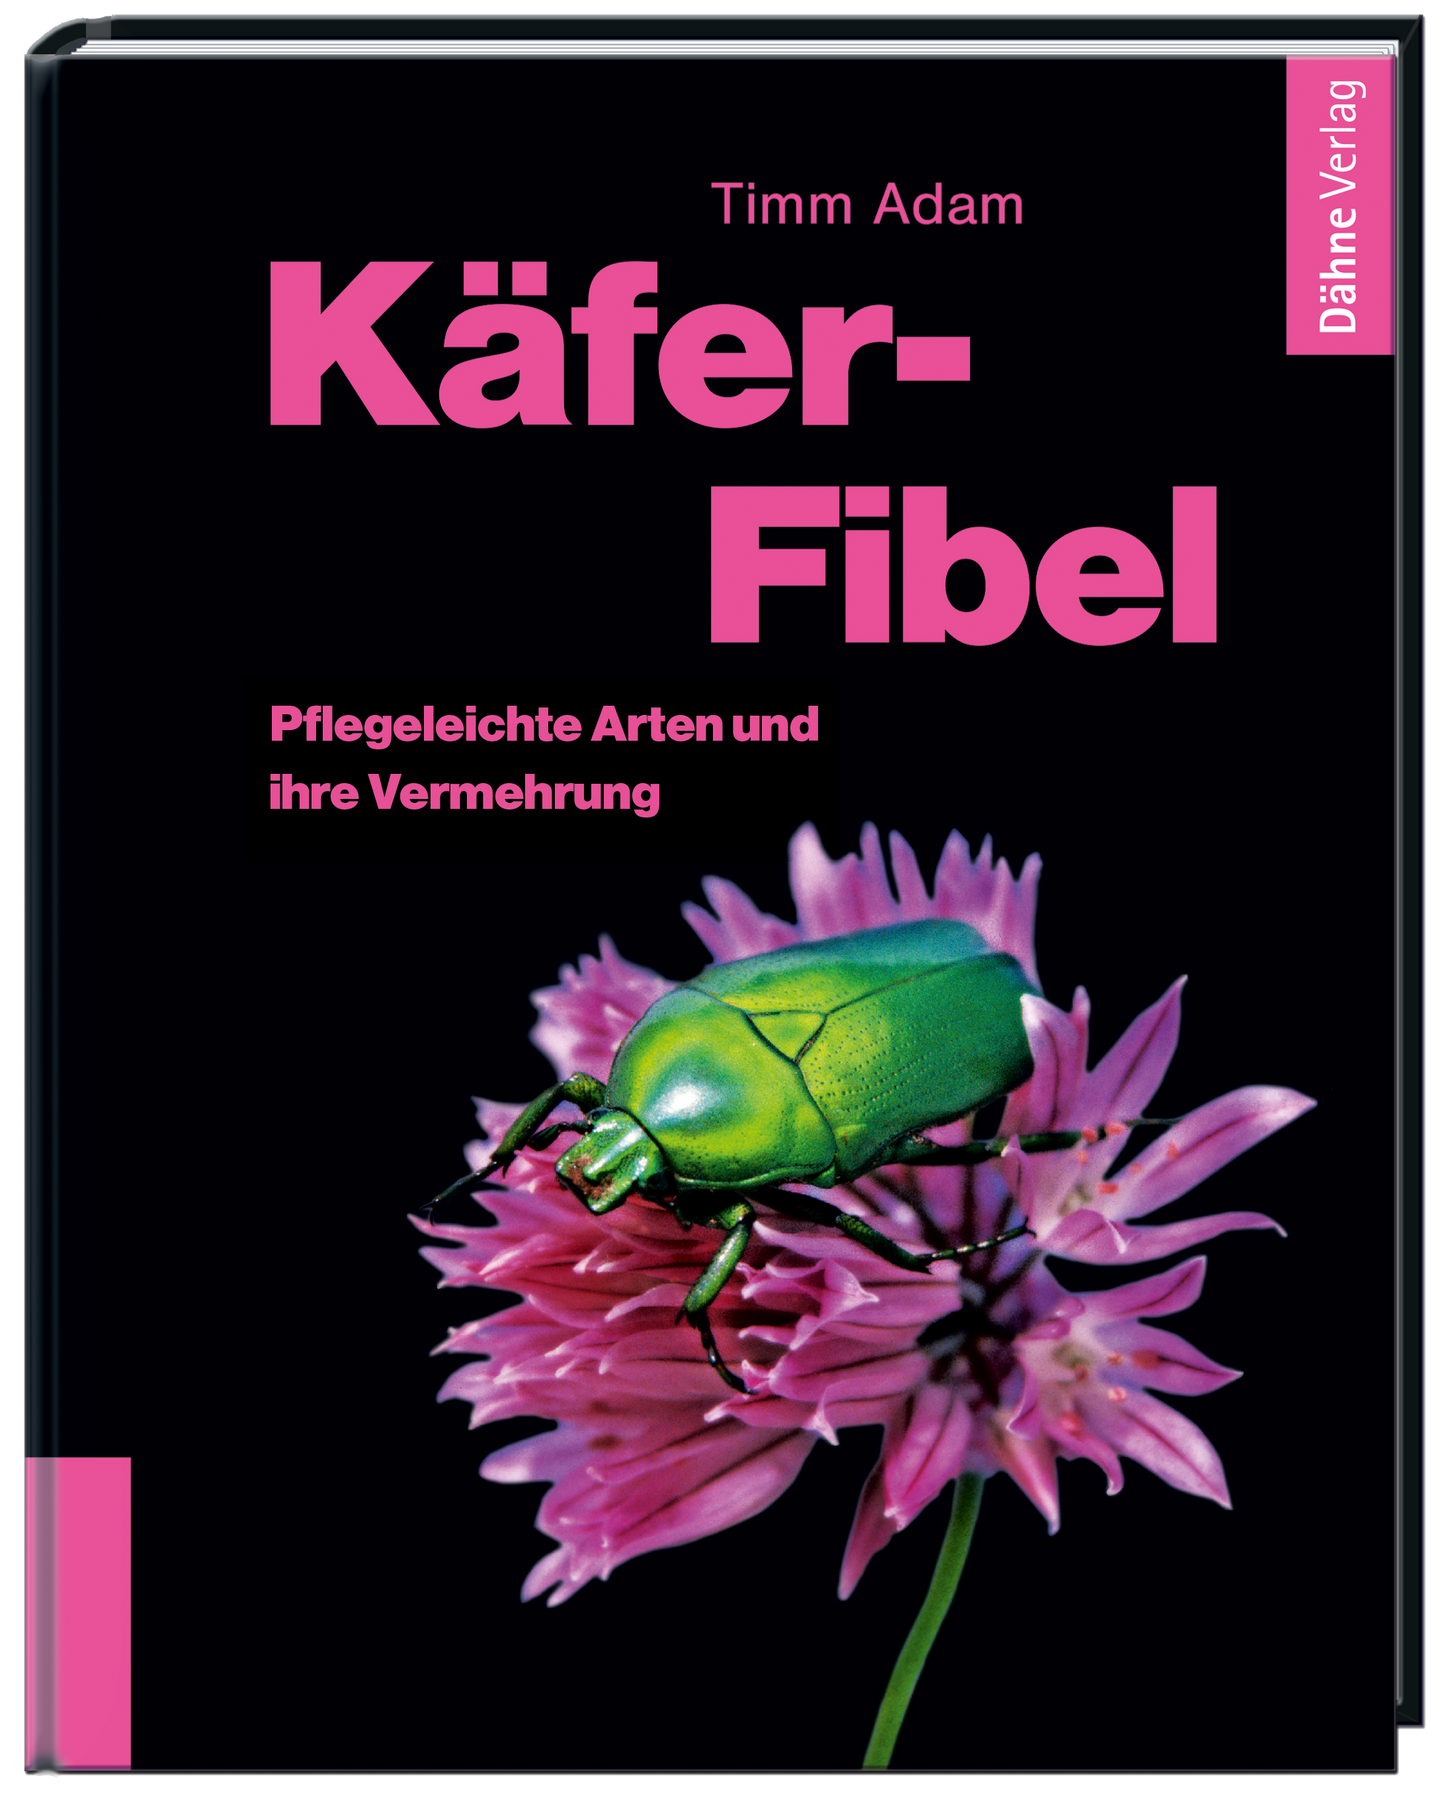 Käfer-Fibel